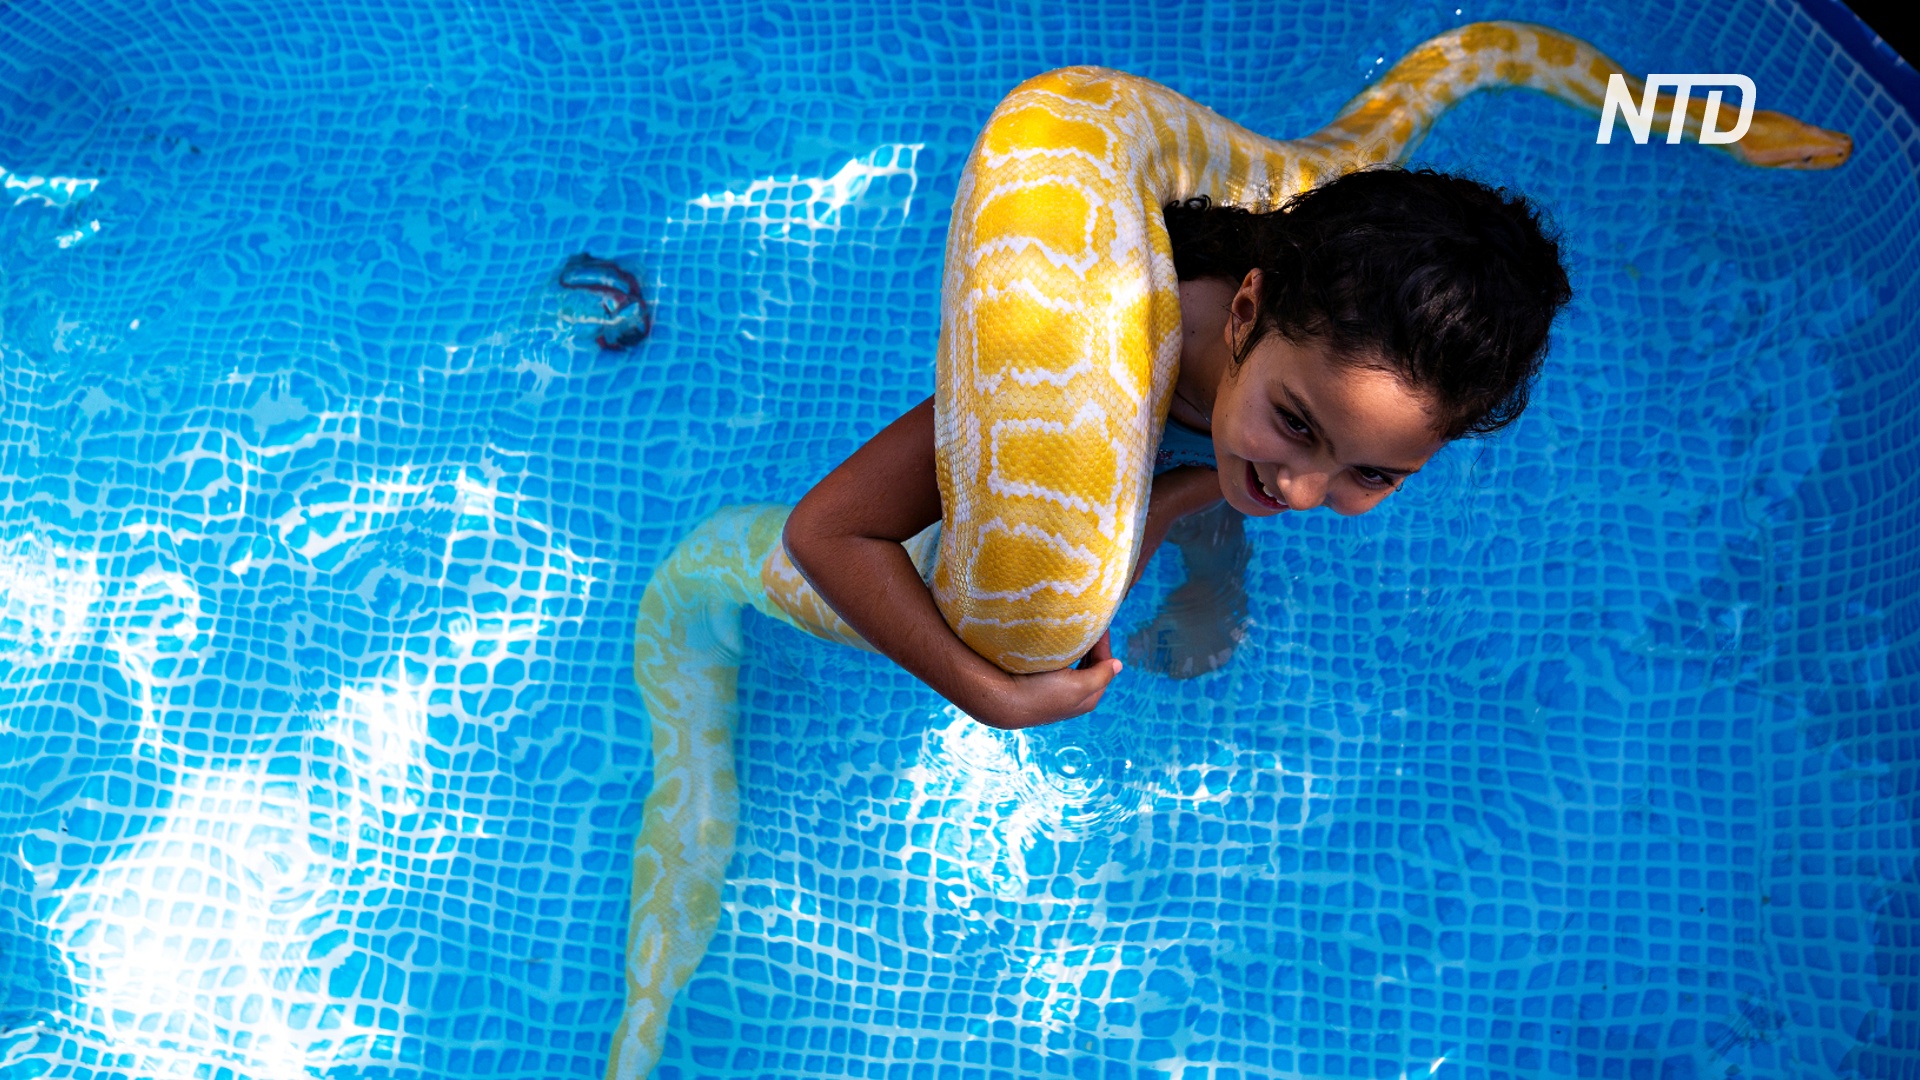 Лучшие друзья: 8-летняя девочка плавает с питоном в бассейне